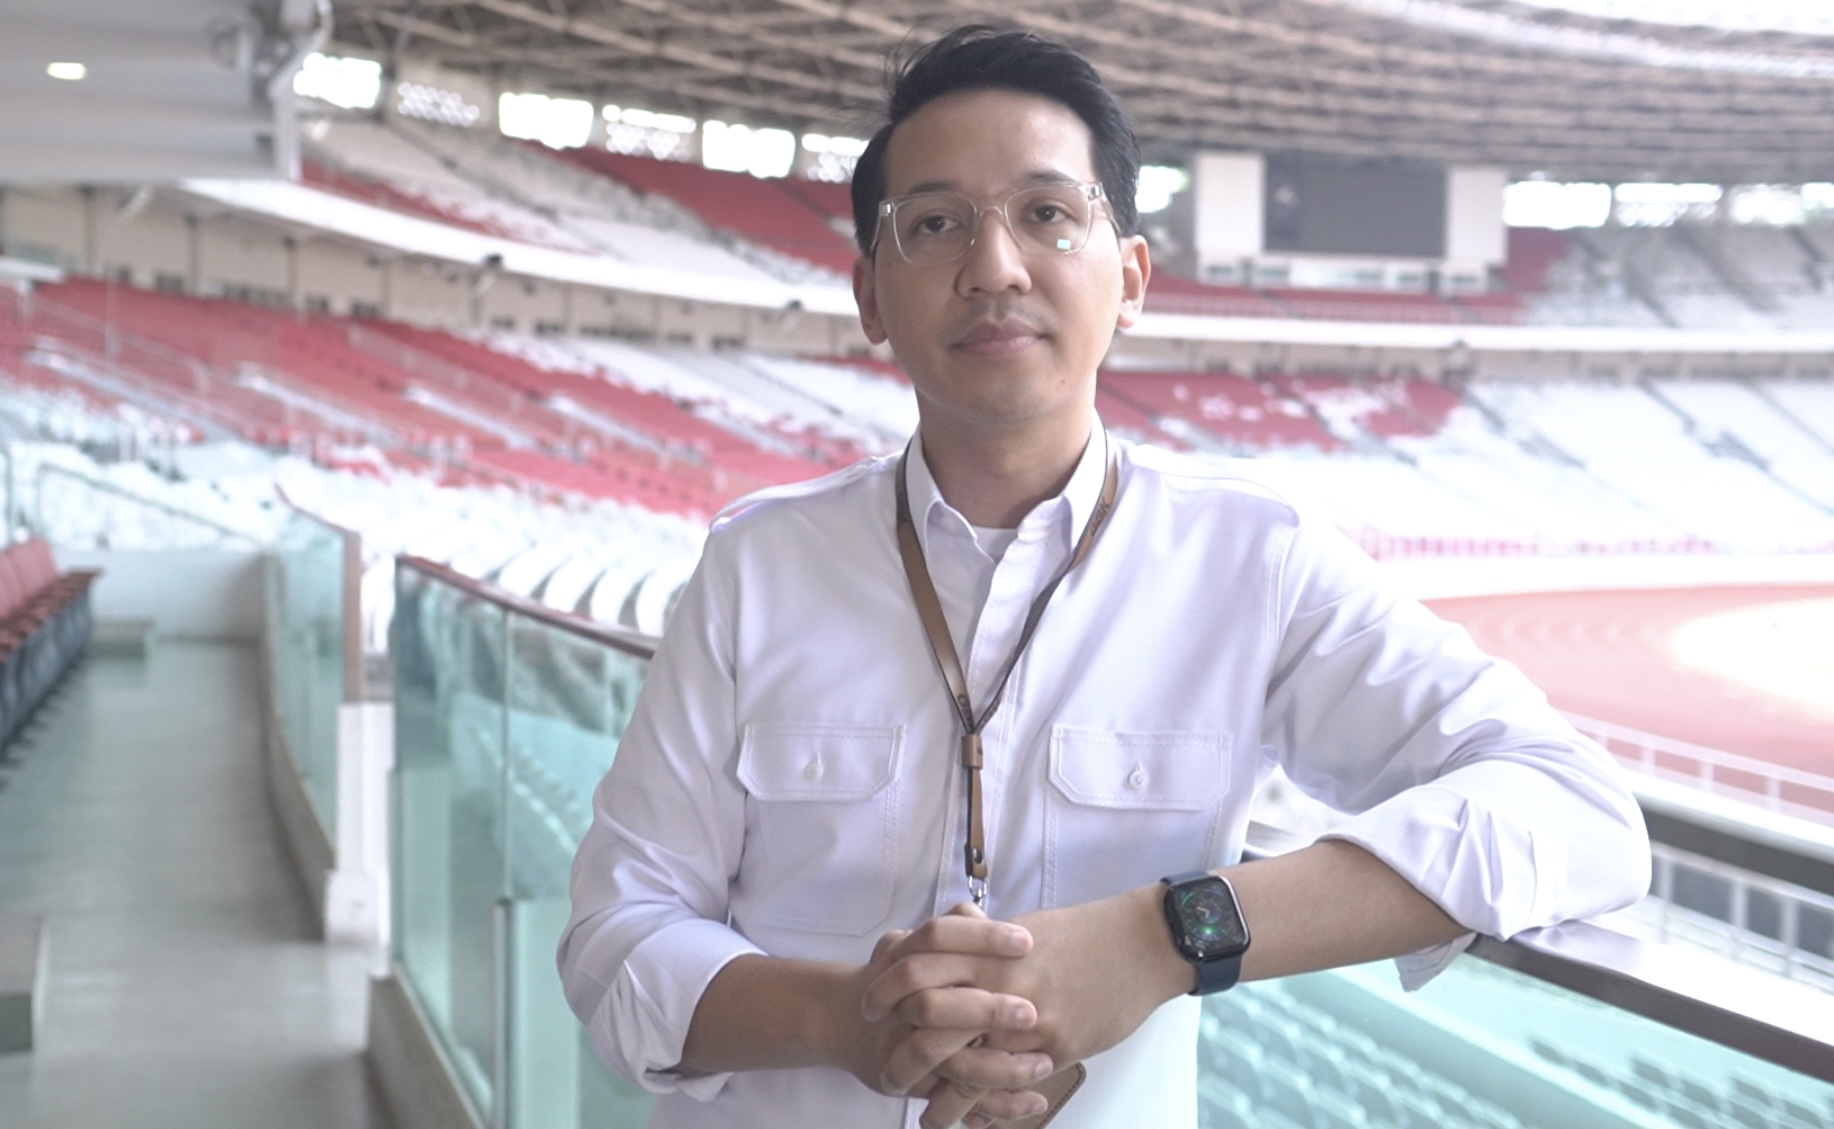 Timnas Indonesia Punya Kans Main di SUGBK saat Piala AFF 2022, Pengelola Bicara dengan PSSI